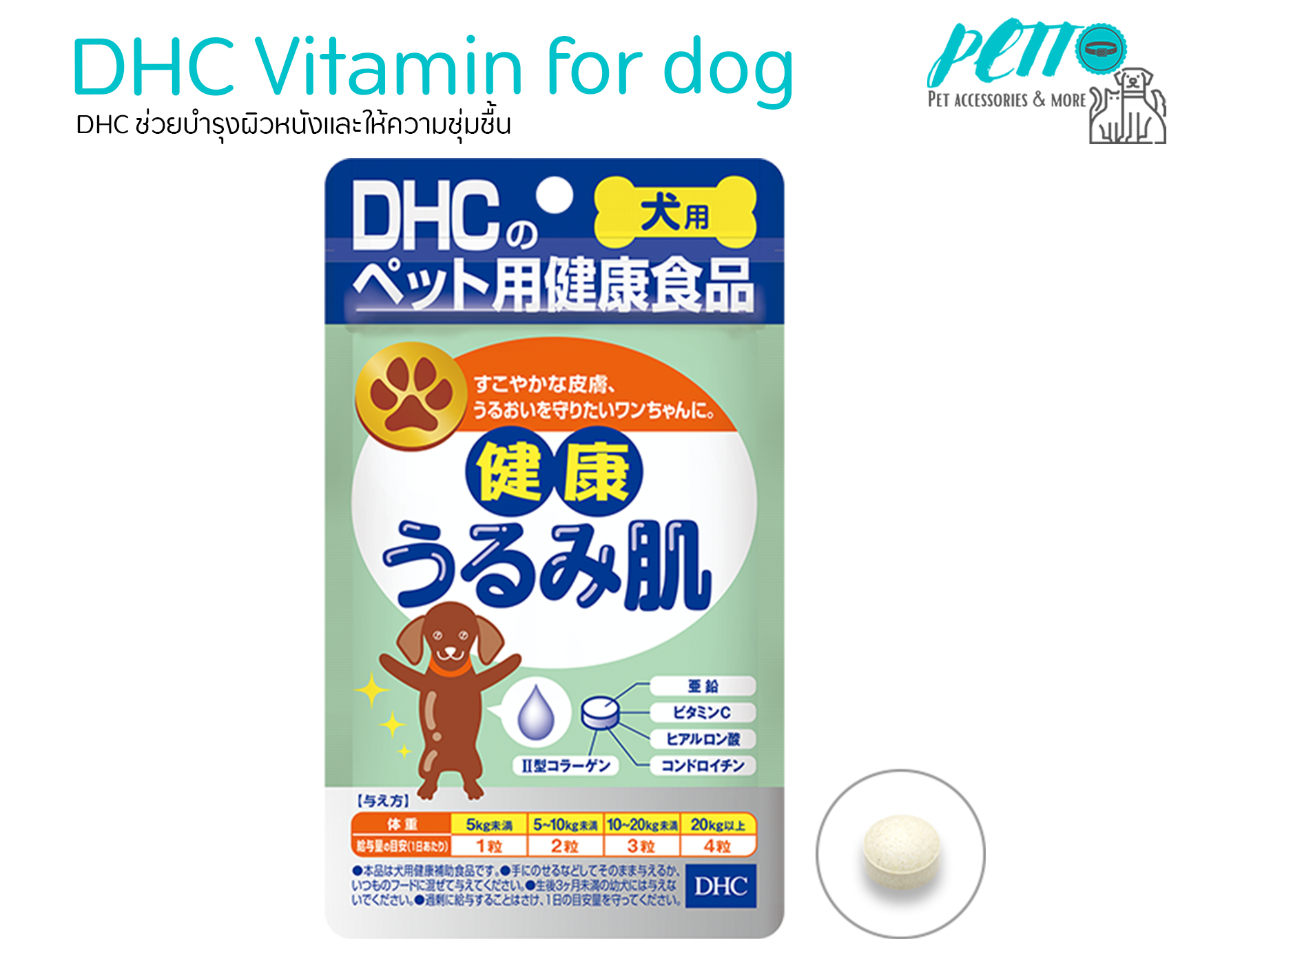 DHC วิตามินสำหรับสุนัข ช่วยบำรุงผิวหนัง และช่วยบำรุงขน บำรุงสุขภาพของผิวหนัง พร้อมส่ง